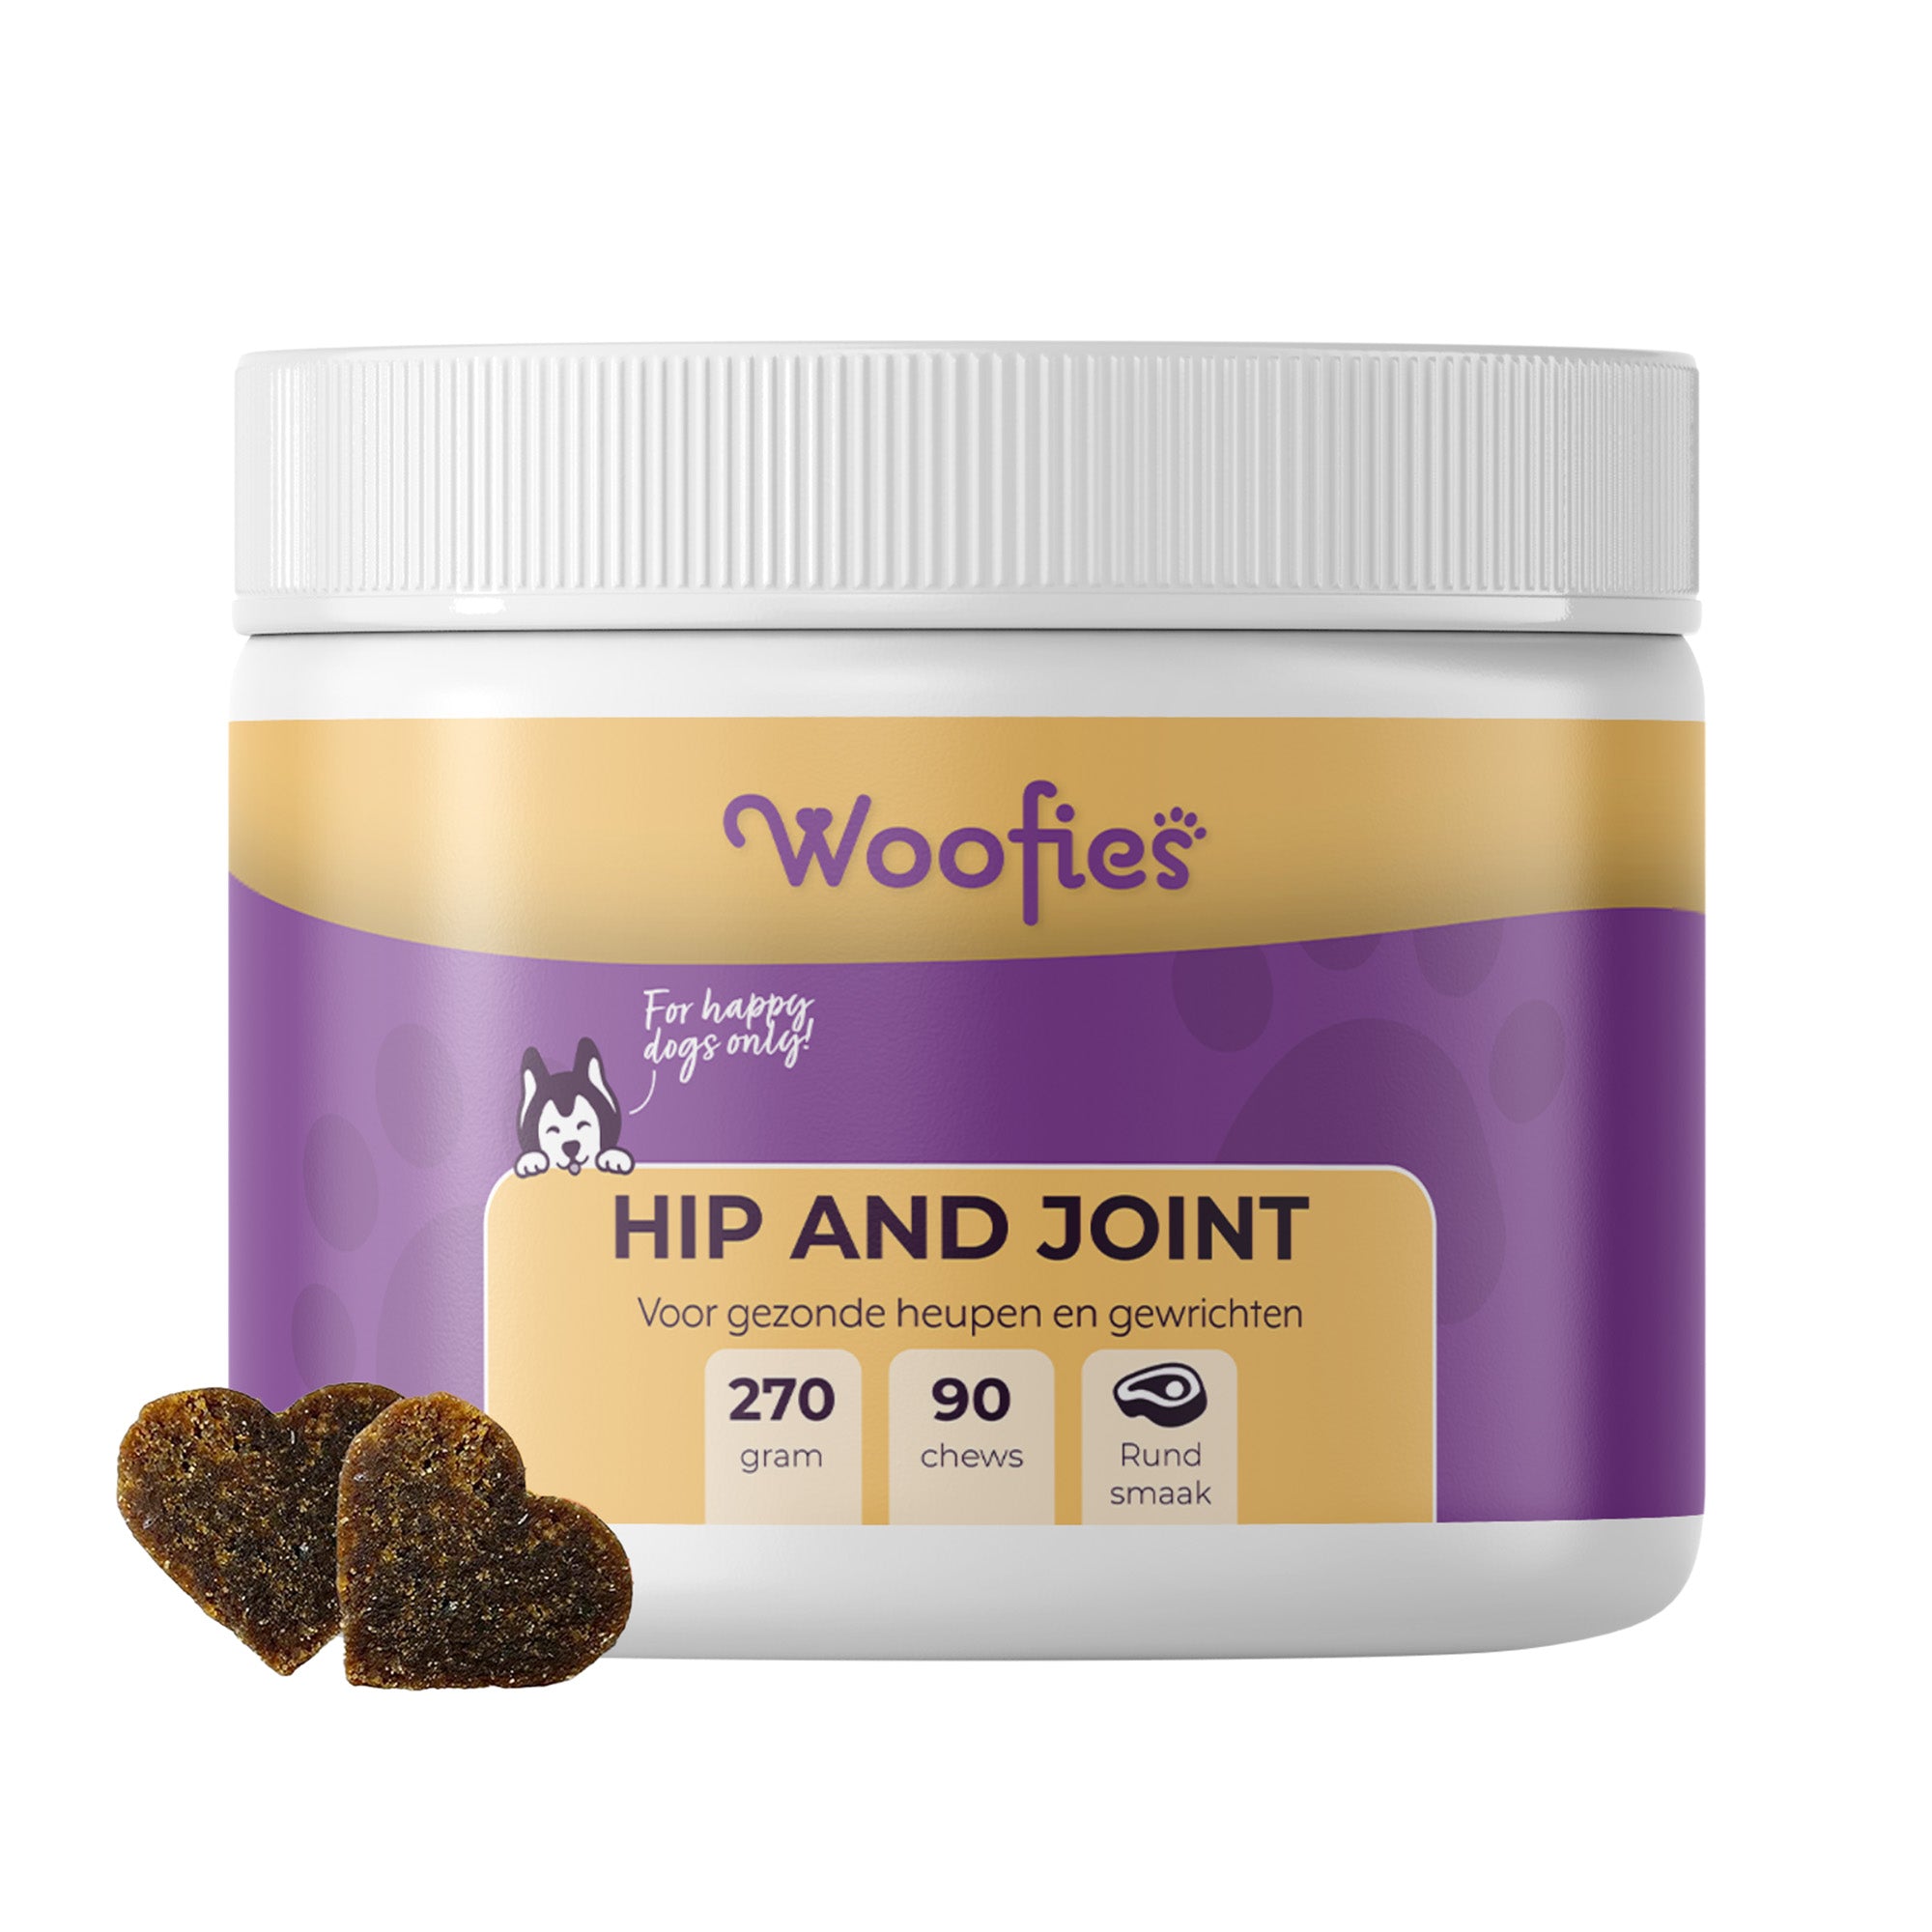 Woofies Hip & Joint Supplement Chews verpakking voor honden.